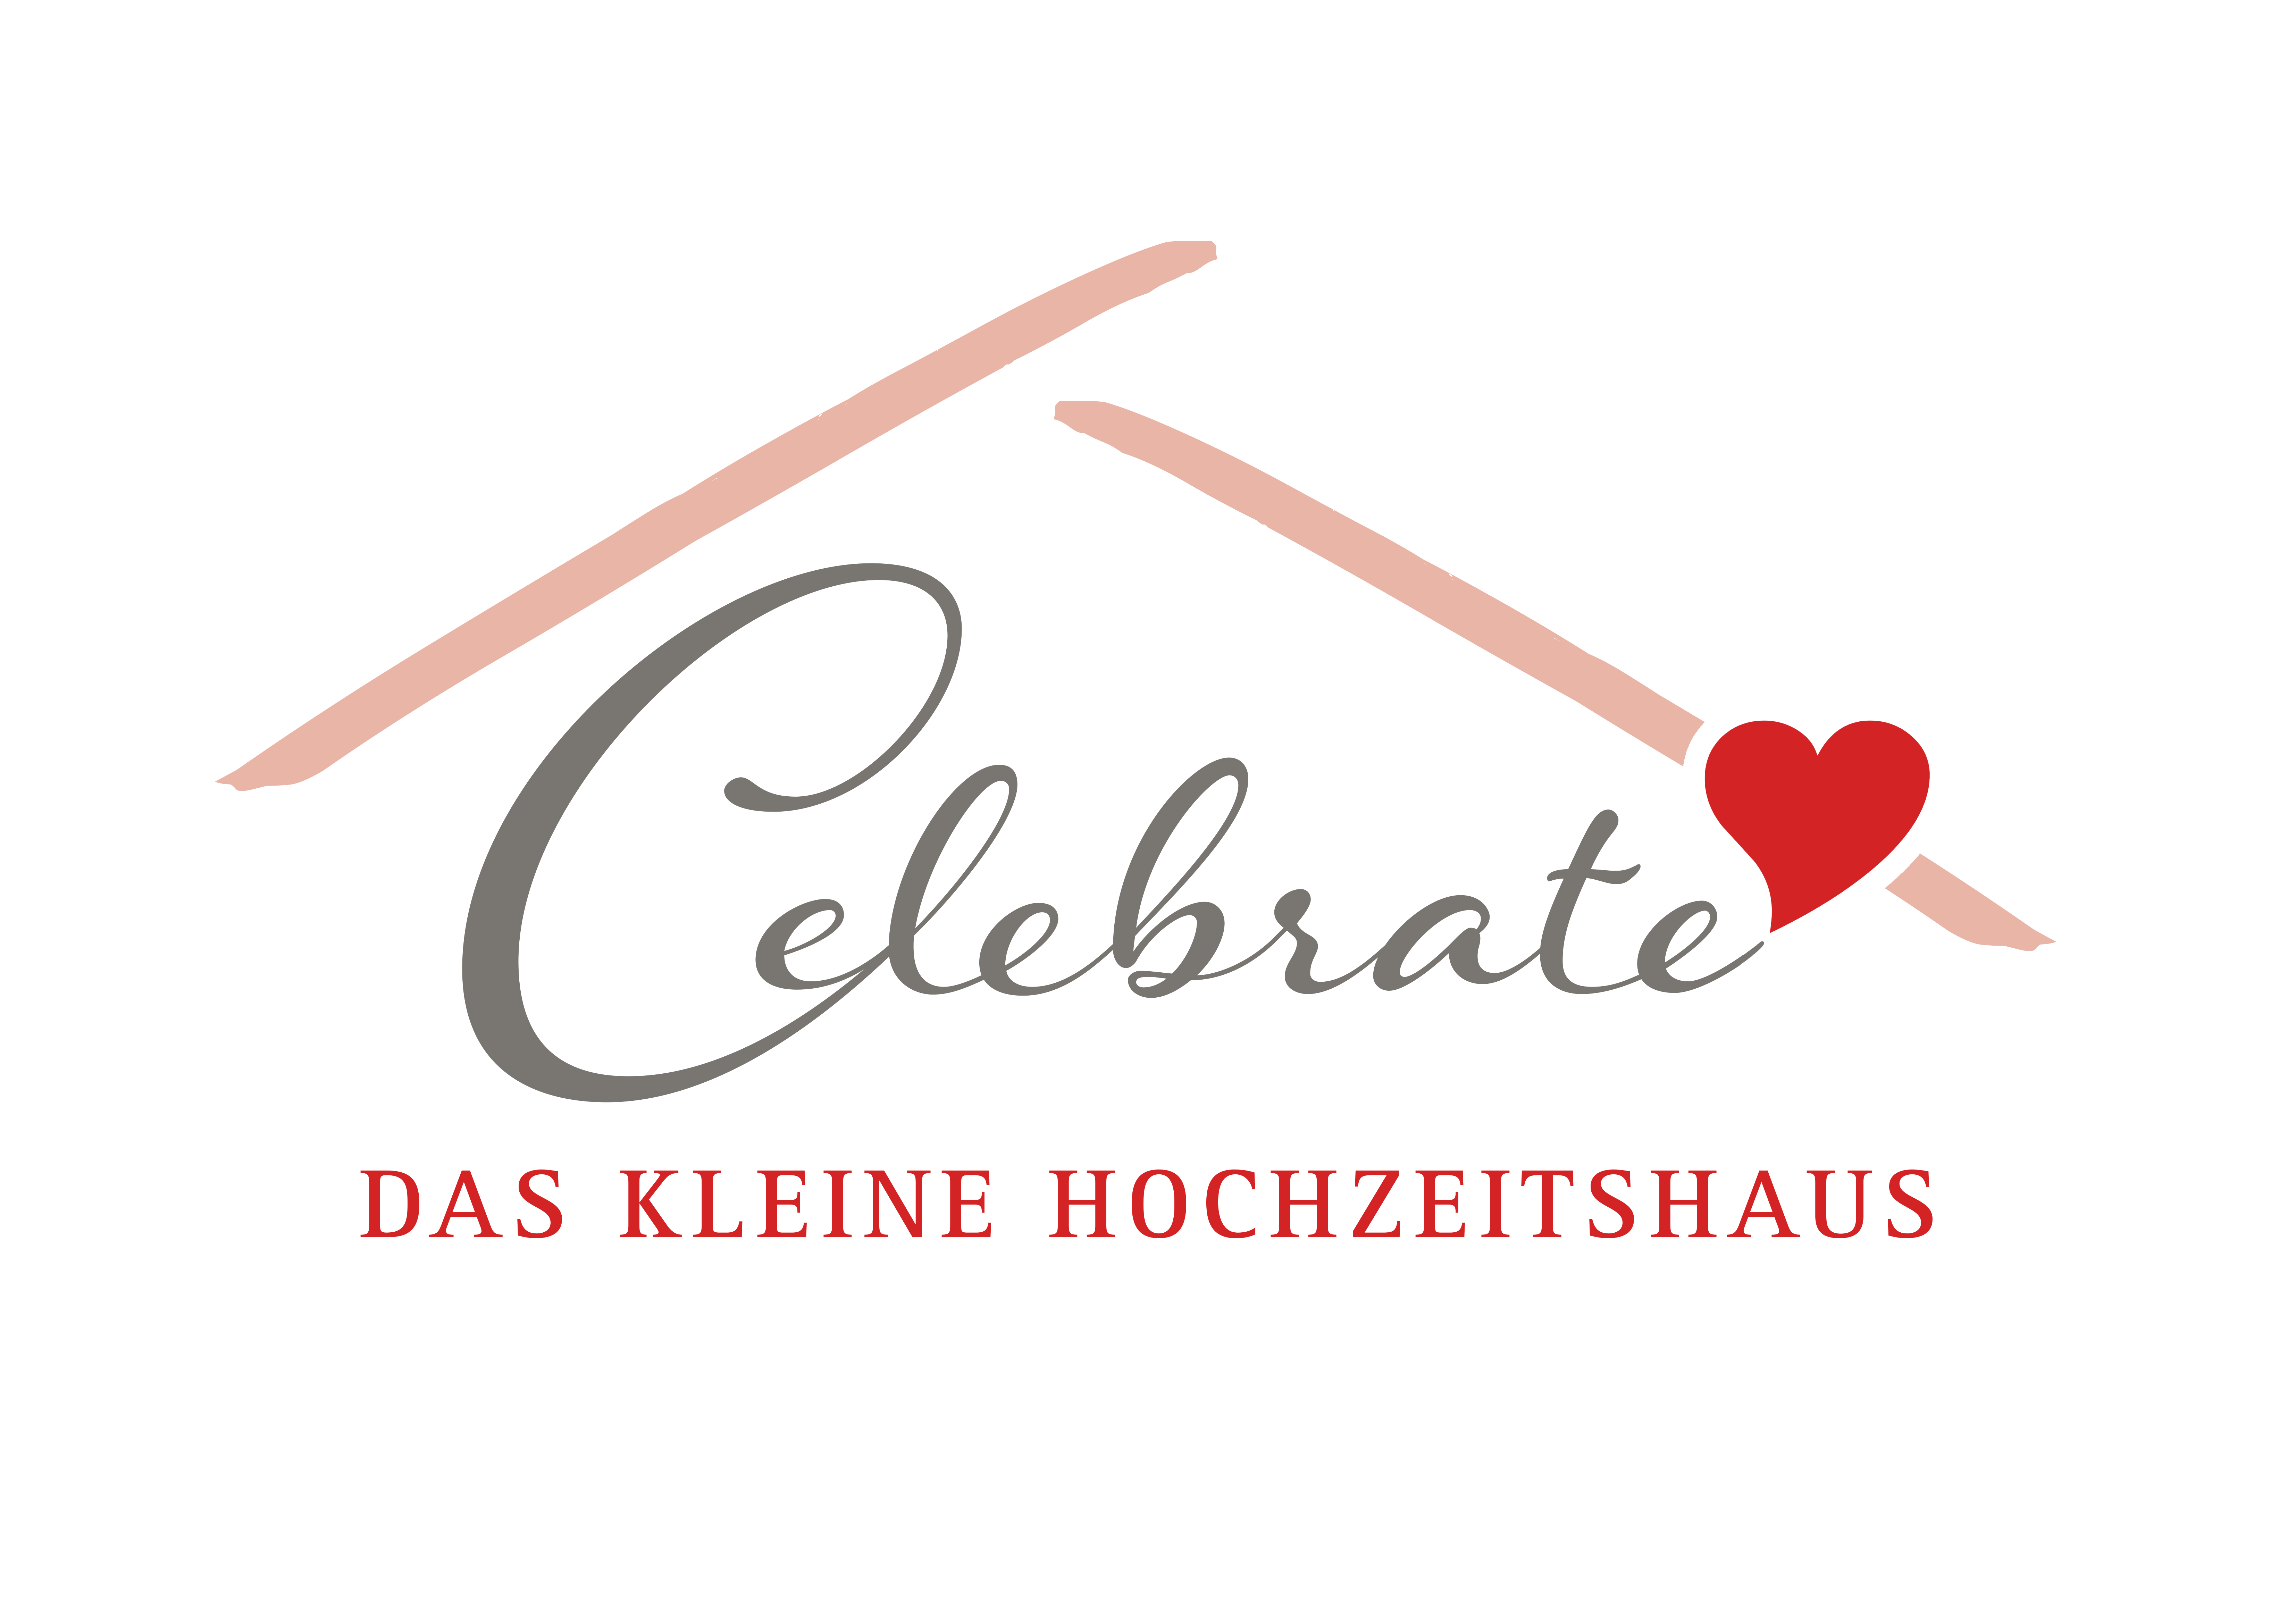 Celebrate Hochzeitshaus Logo